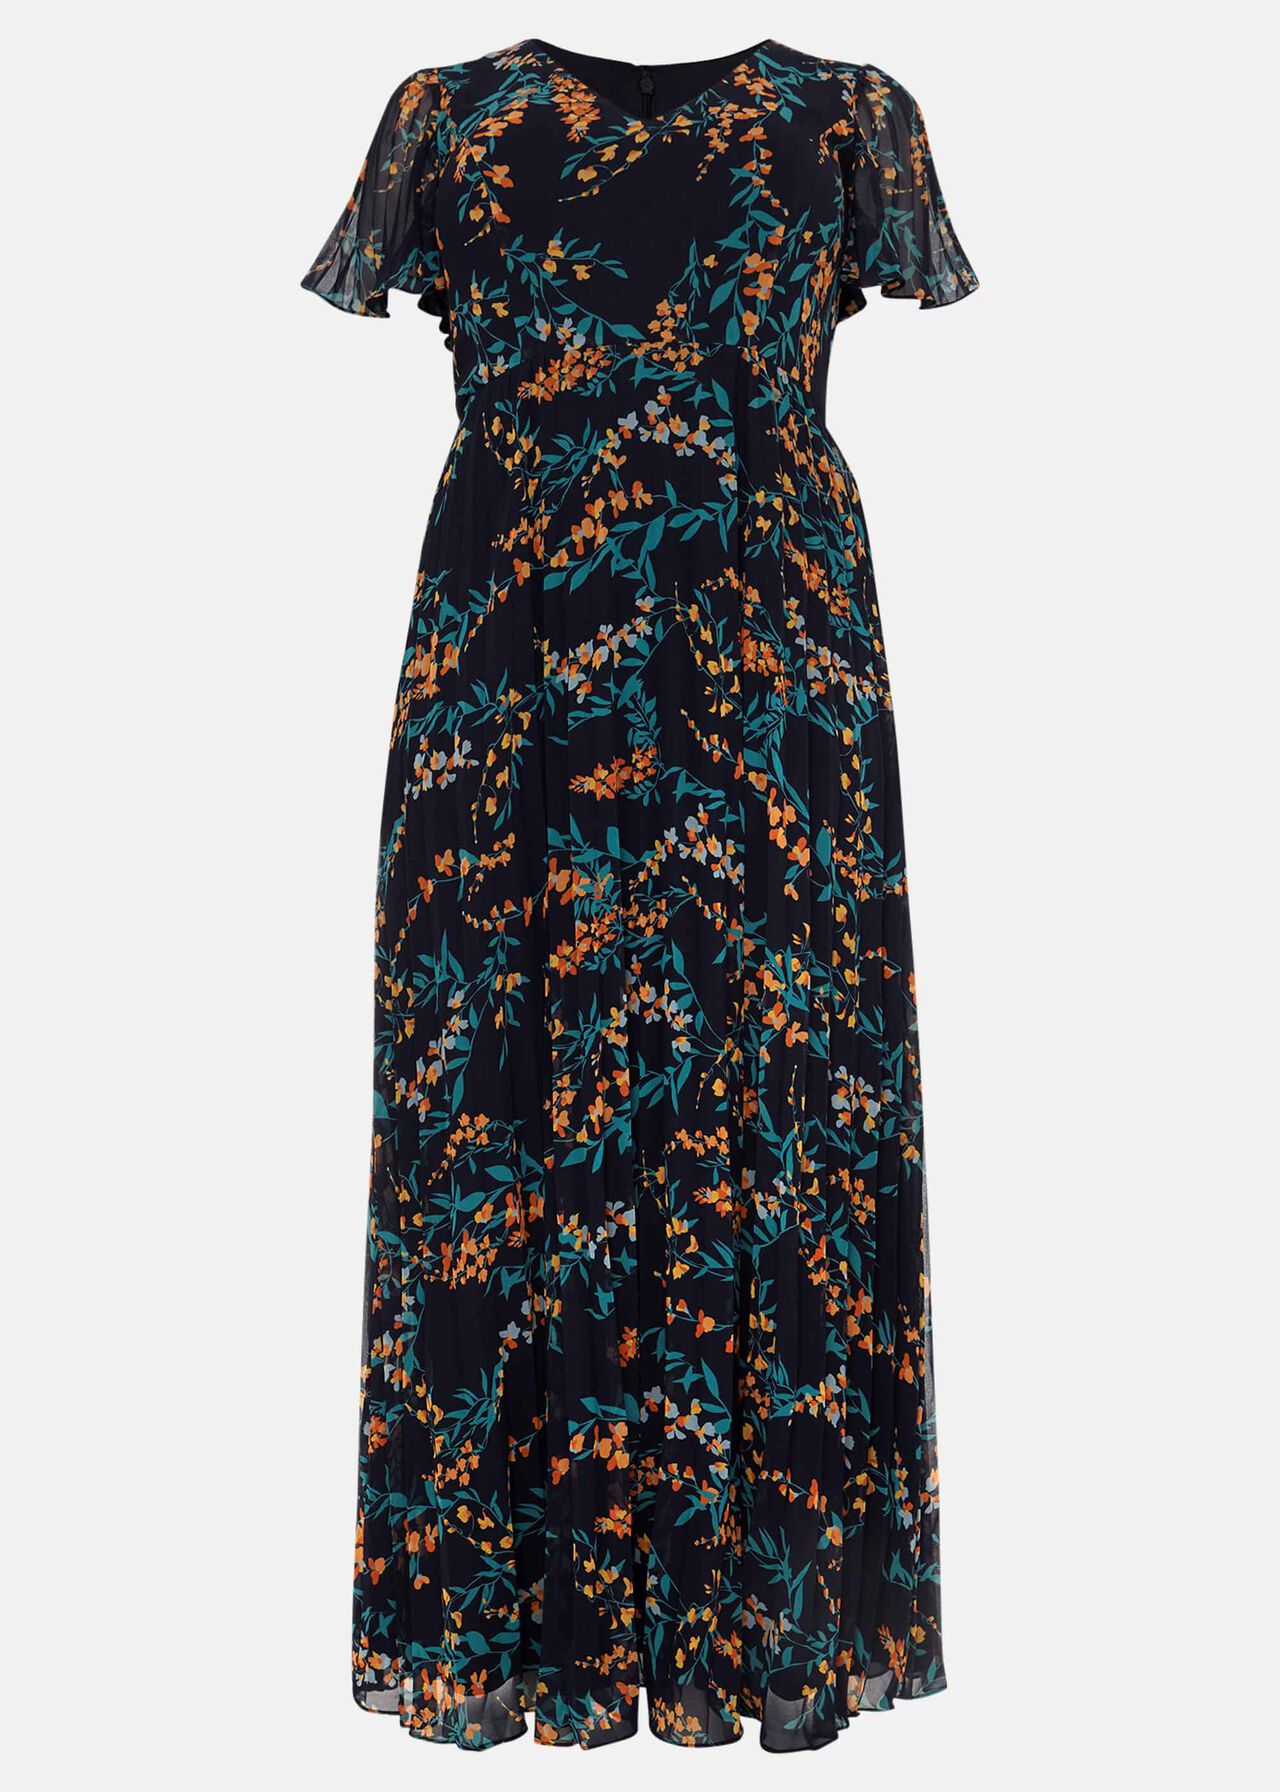 Annie Floral Maxi Dress